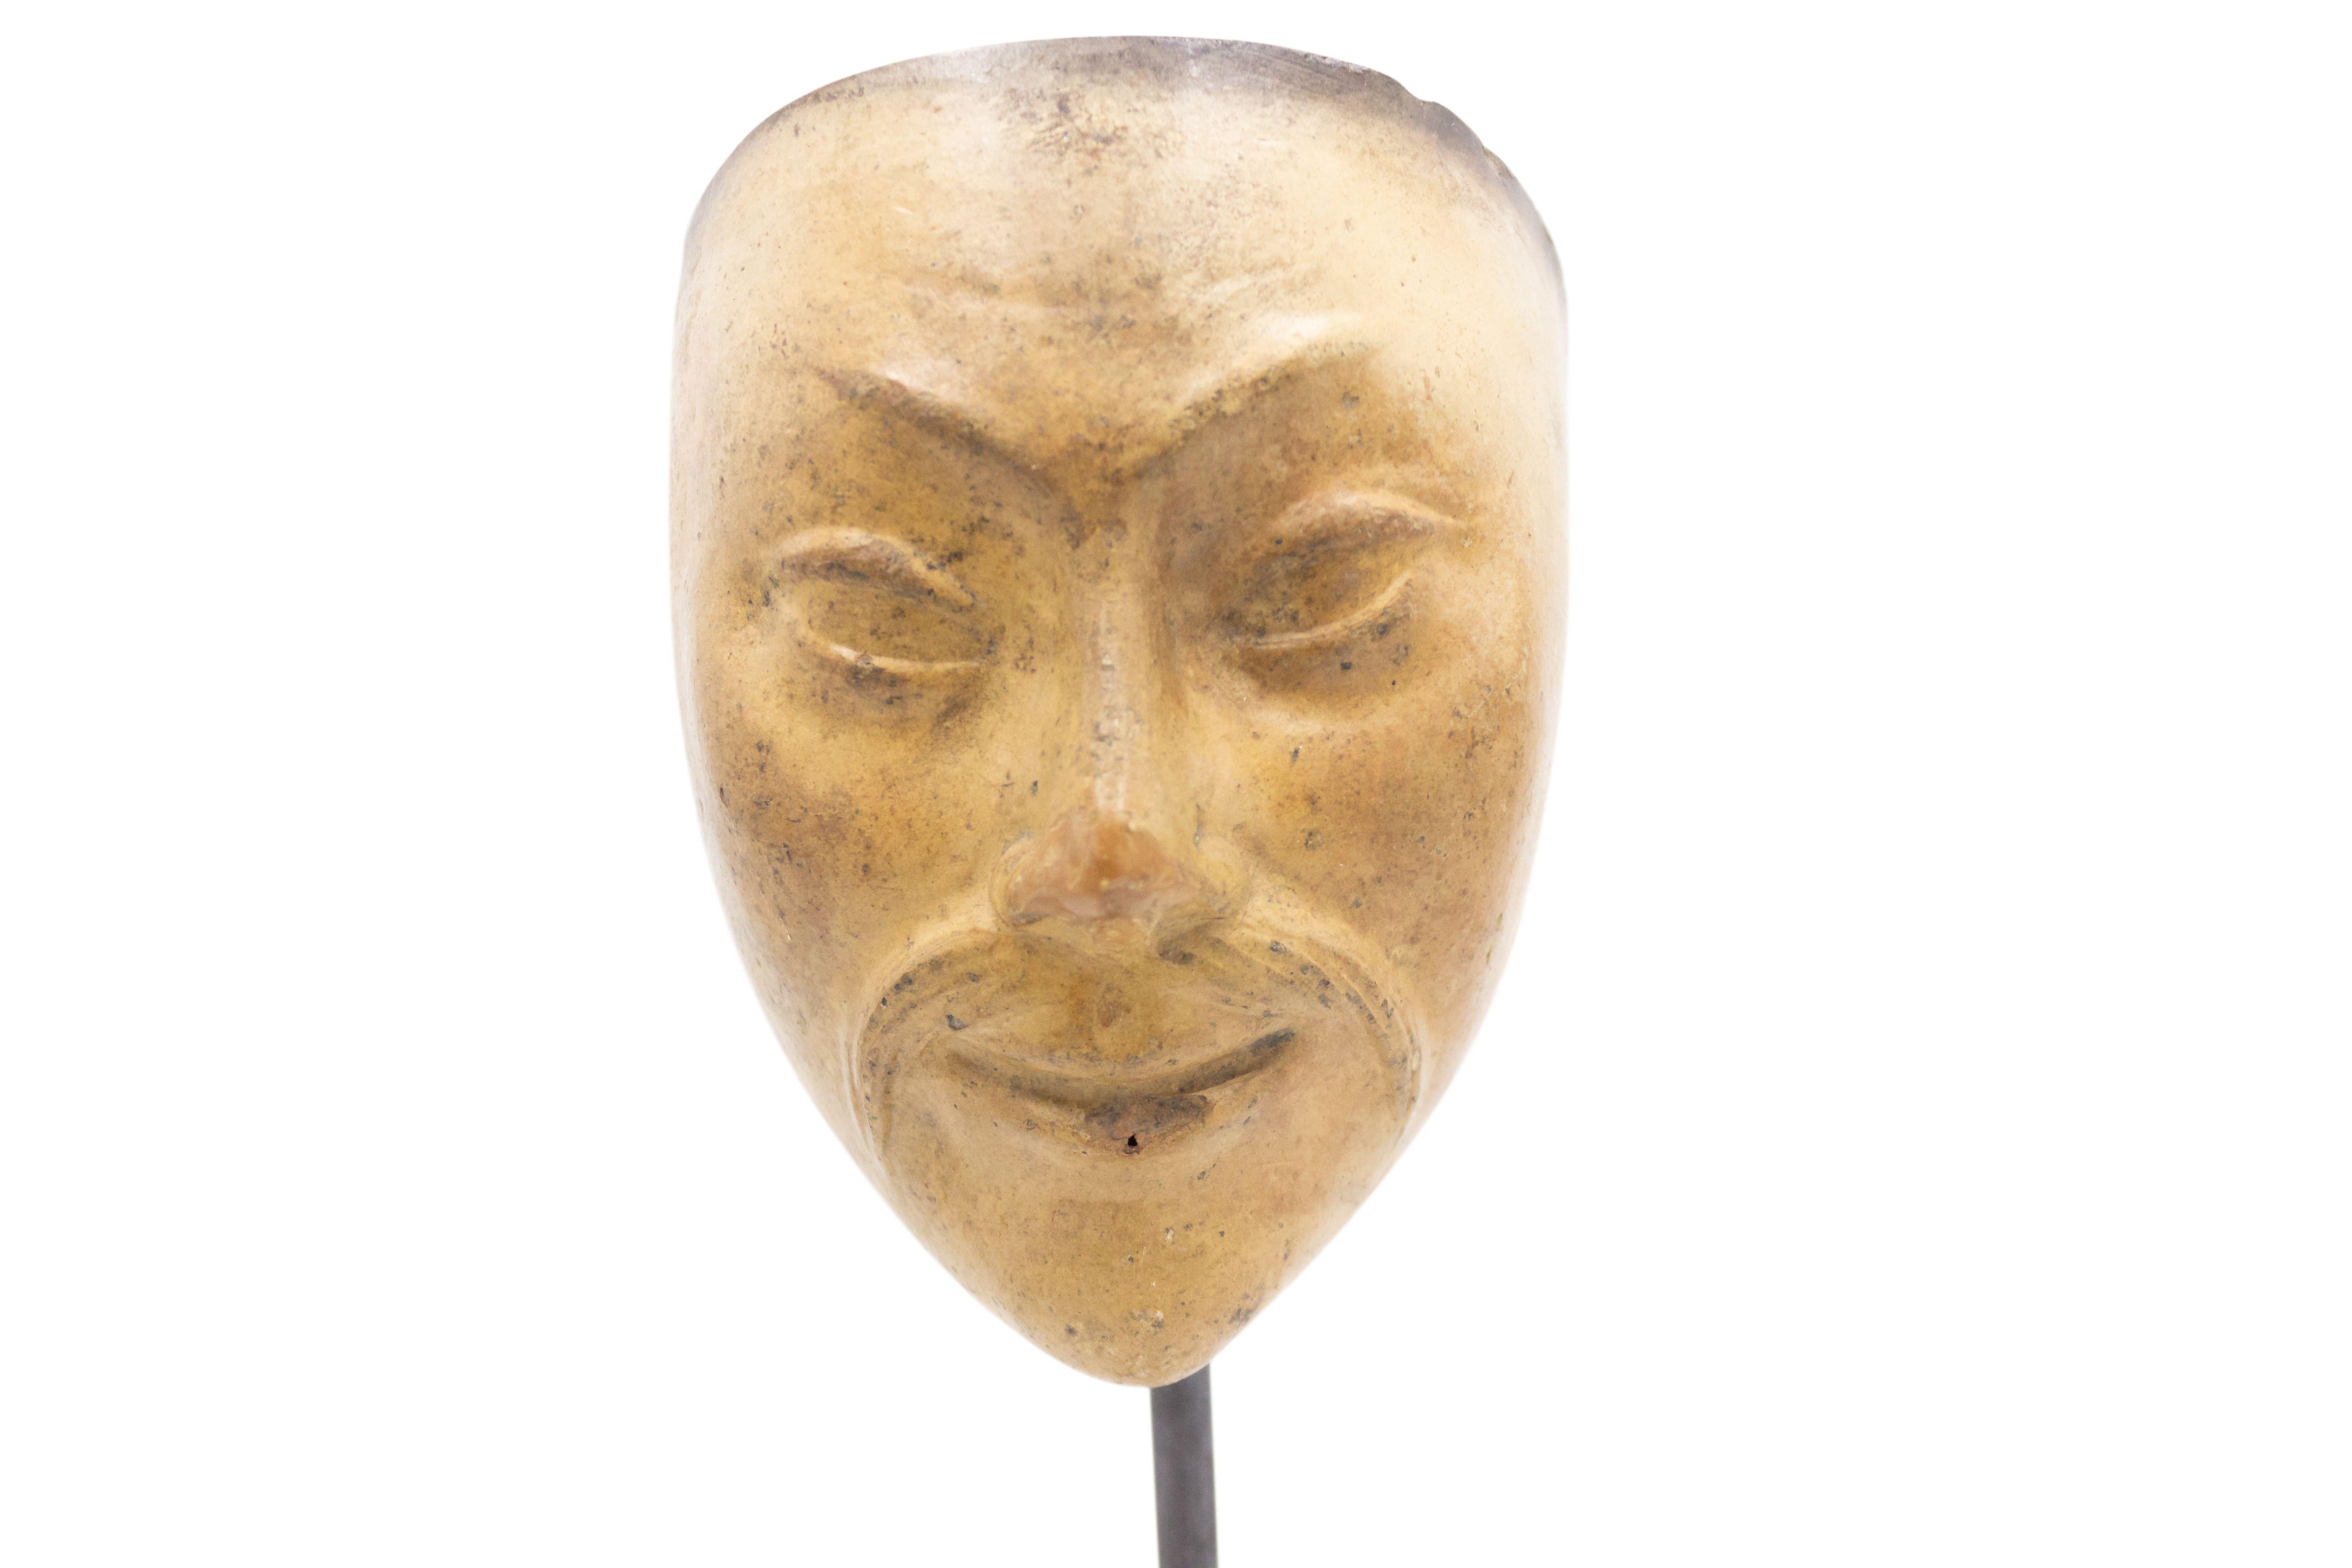 Moule de masque de maître en terre cuite sculpté en Allemagne continentale (fin du 19e siècle) représentant un petit visage asiatique avec une moustache et les initiales 